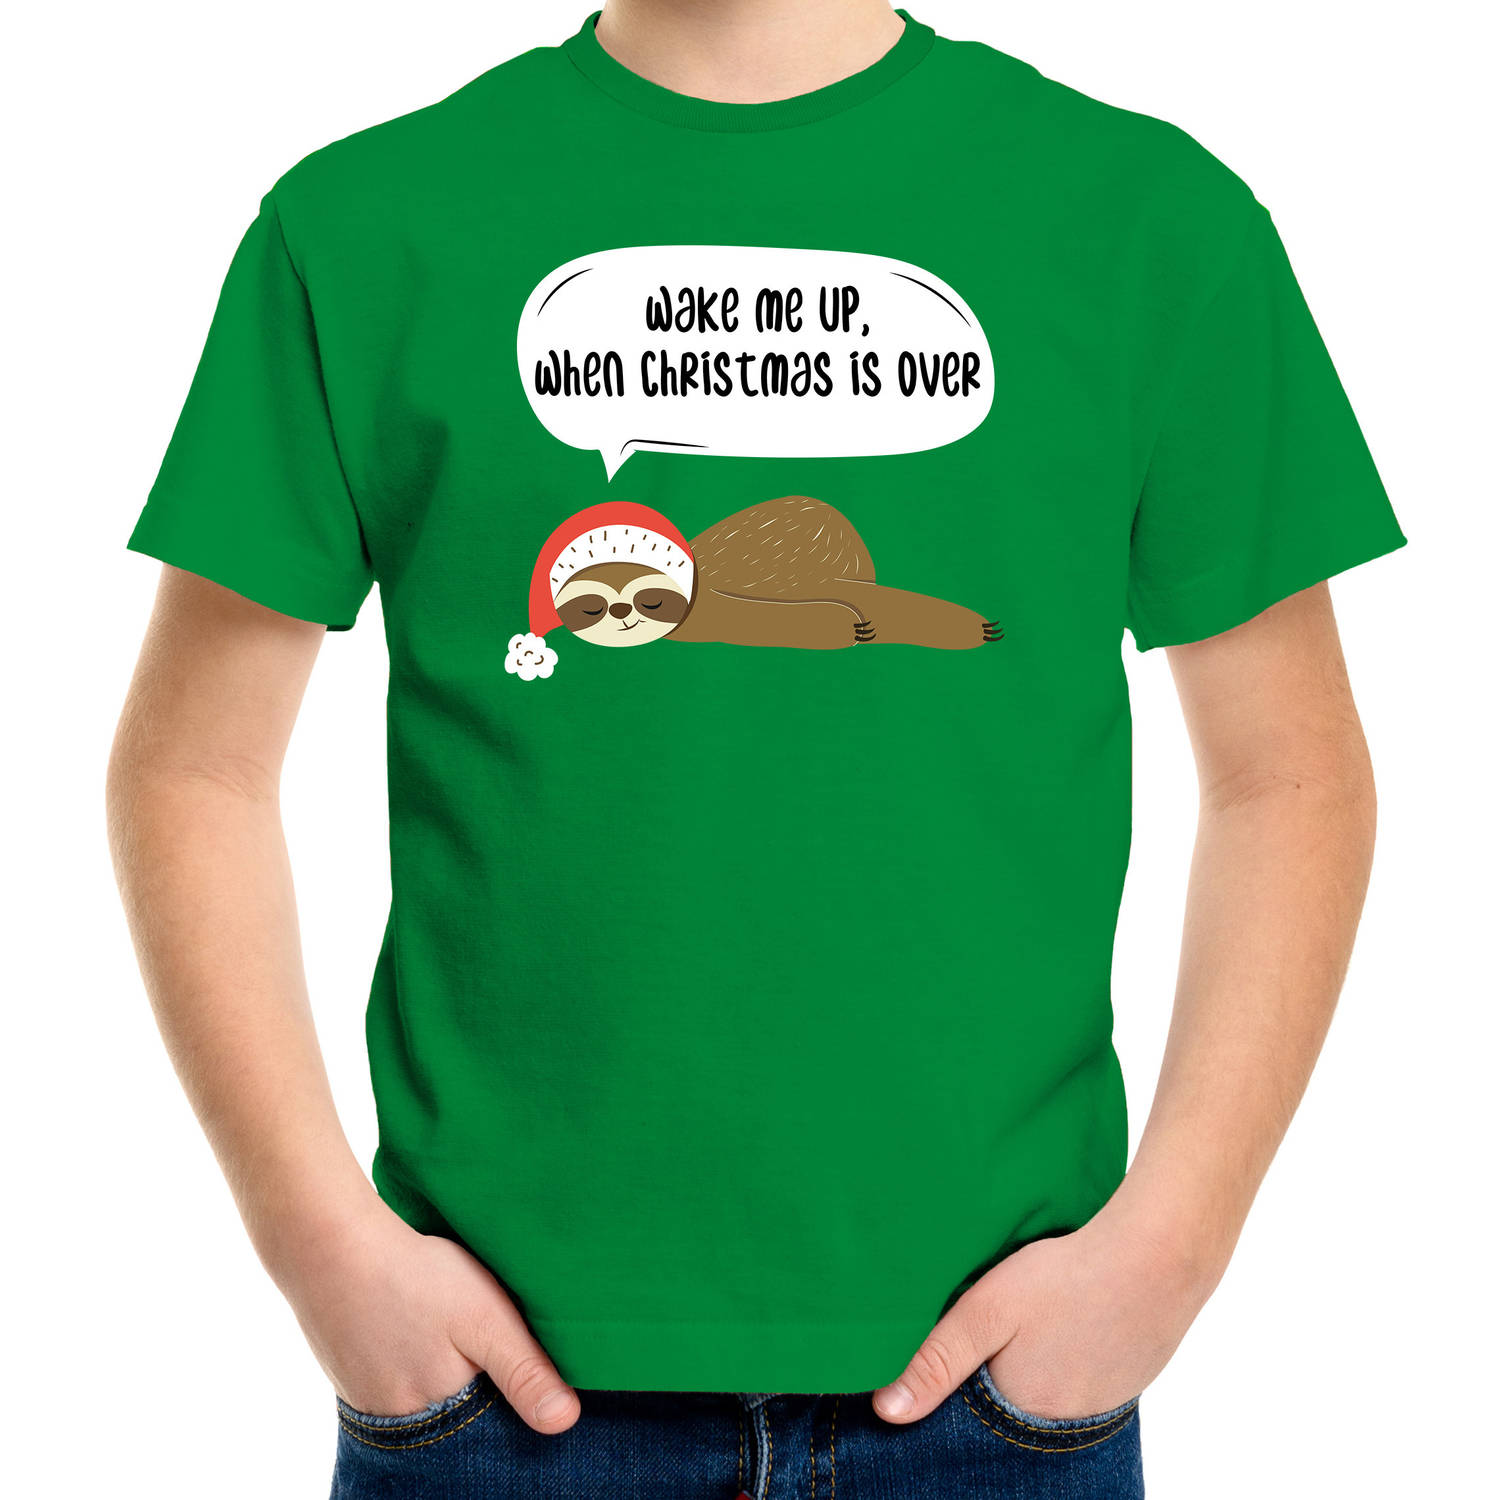 Groen Kerst shirt/ Kerstkleding met luiaard Wake me up when christmas is over voor kinderen S (110-116) - kerst t-shirts